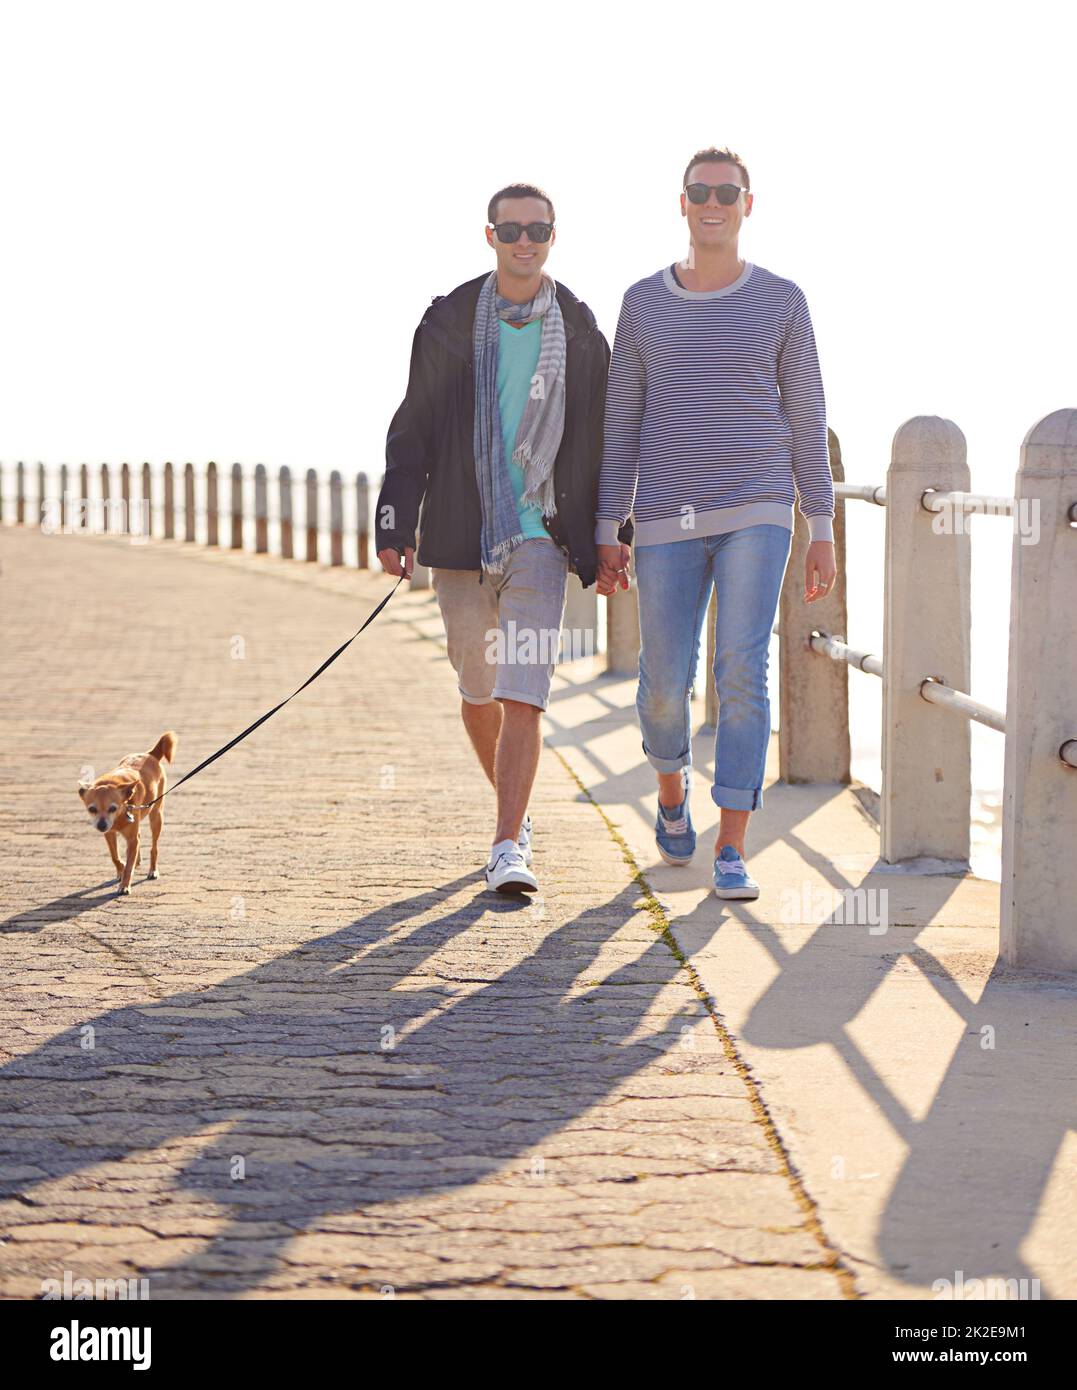 Promenade en bord de mer avec notre petite princesse. Photo d'un jeune couple gay en train de se promener sur la promenade avec son chien. Banque D'Images